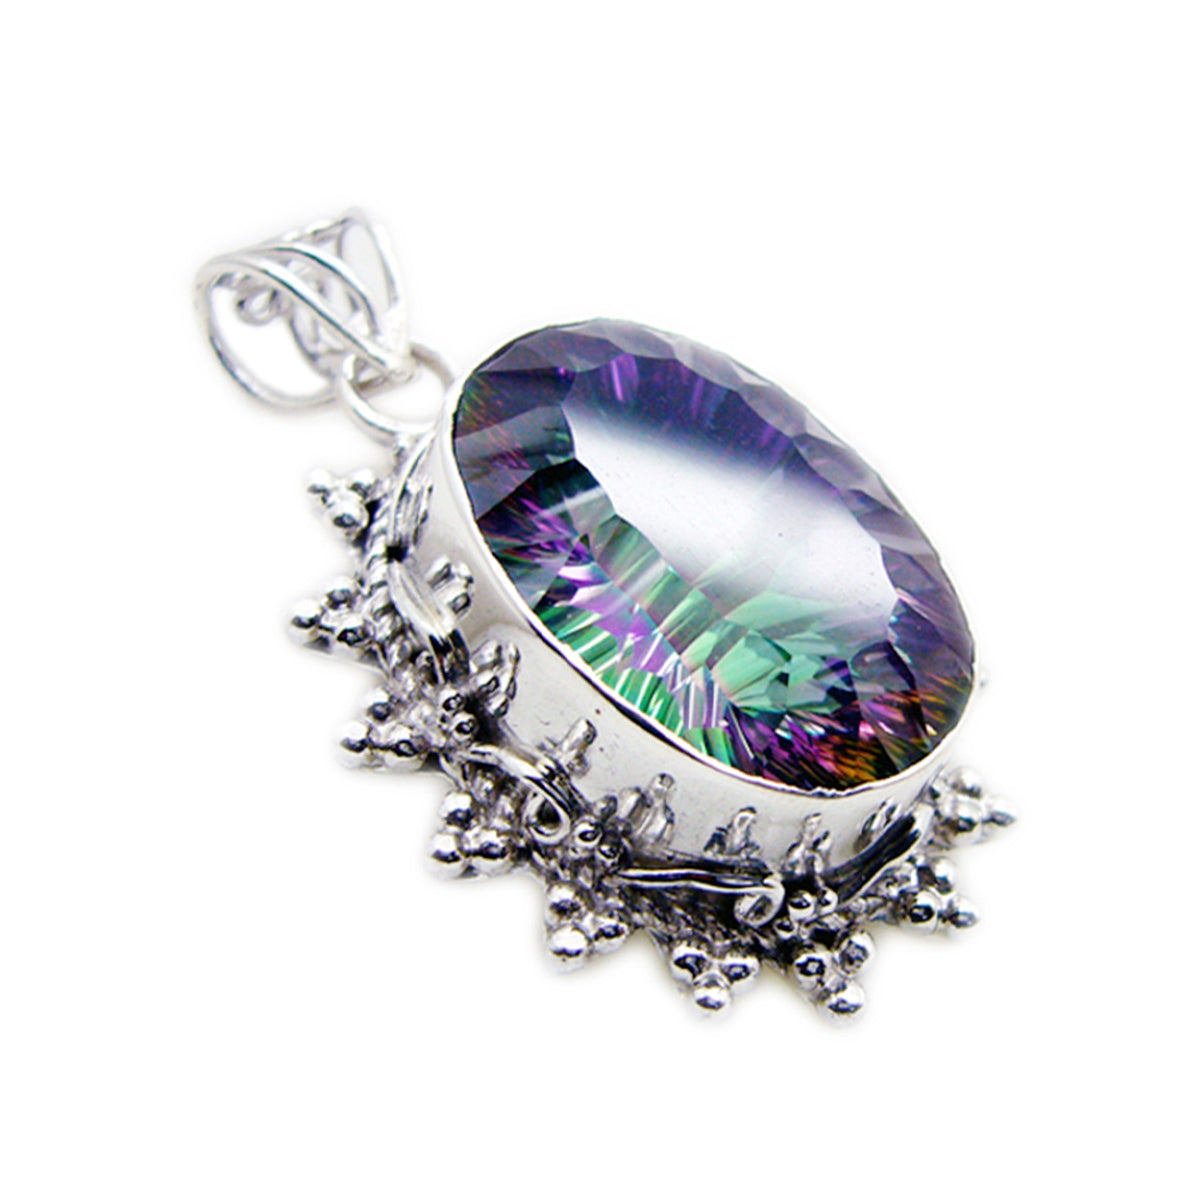 riyo prepossessing ädelsten oval facetterad flerfärgad mystic quartz 1174 sterling silver hänge present till långfredag